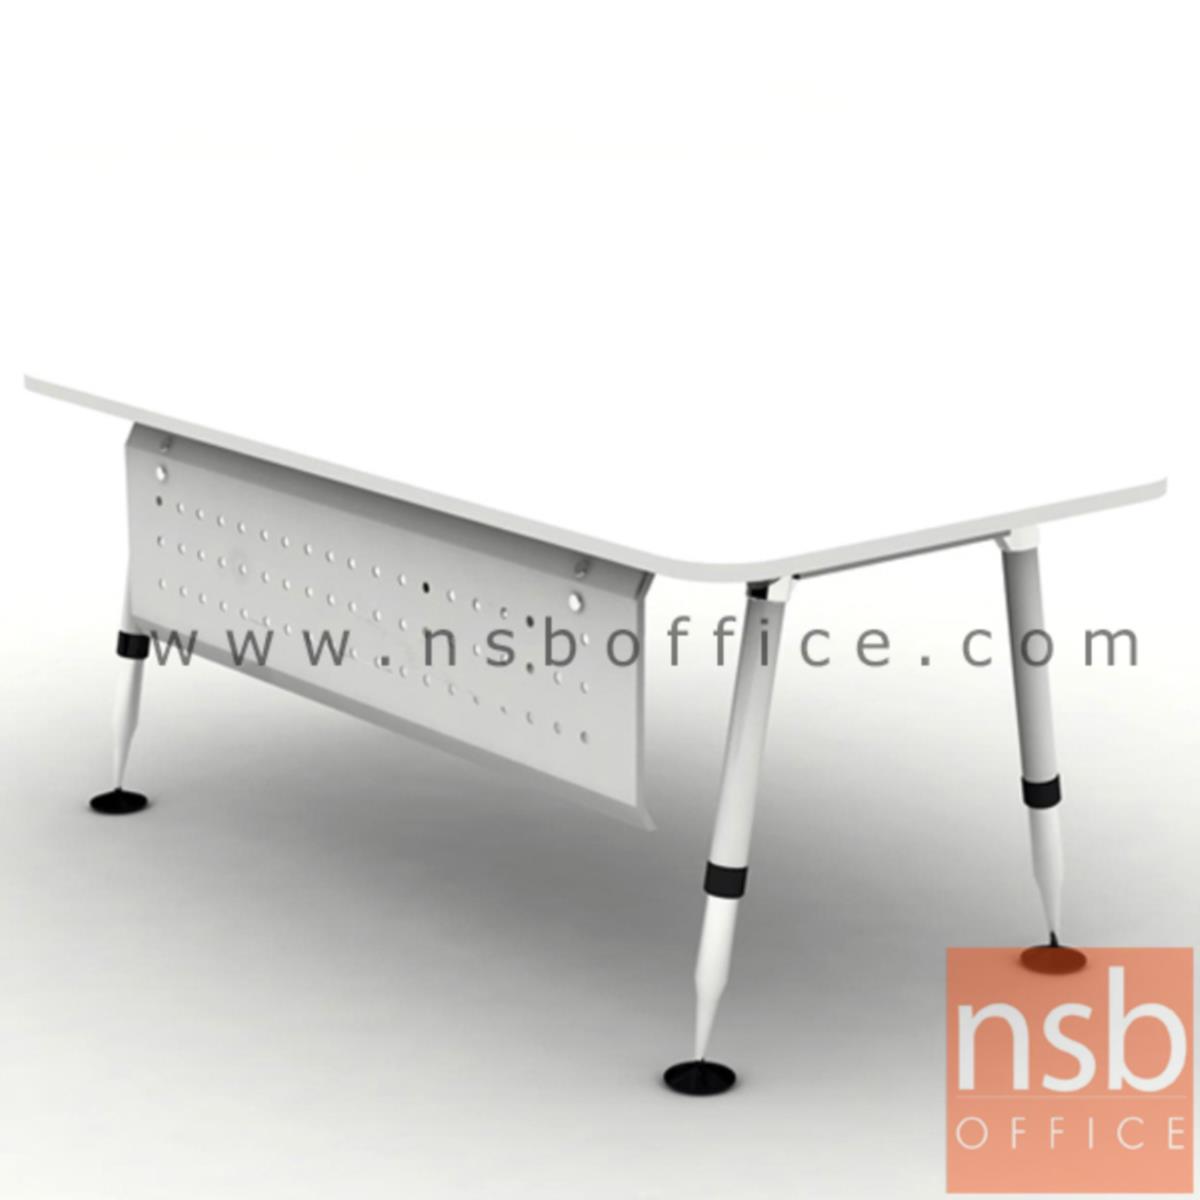 โต๊ะผู้บริหารทรงสี่เหลี่ยม รุ่น HB-DK04-1890  ขนาด 180W cm. ขาเหล็กสีขาวปลายโครเมี่ยม